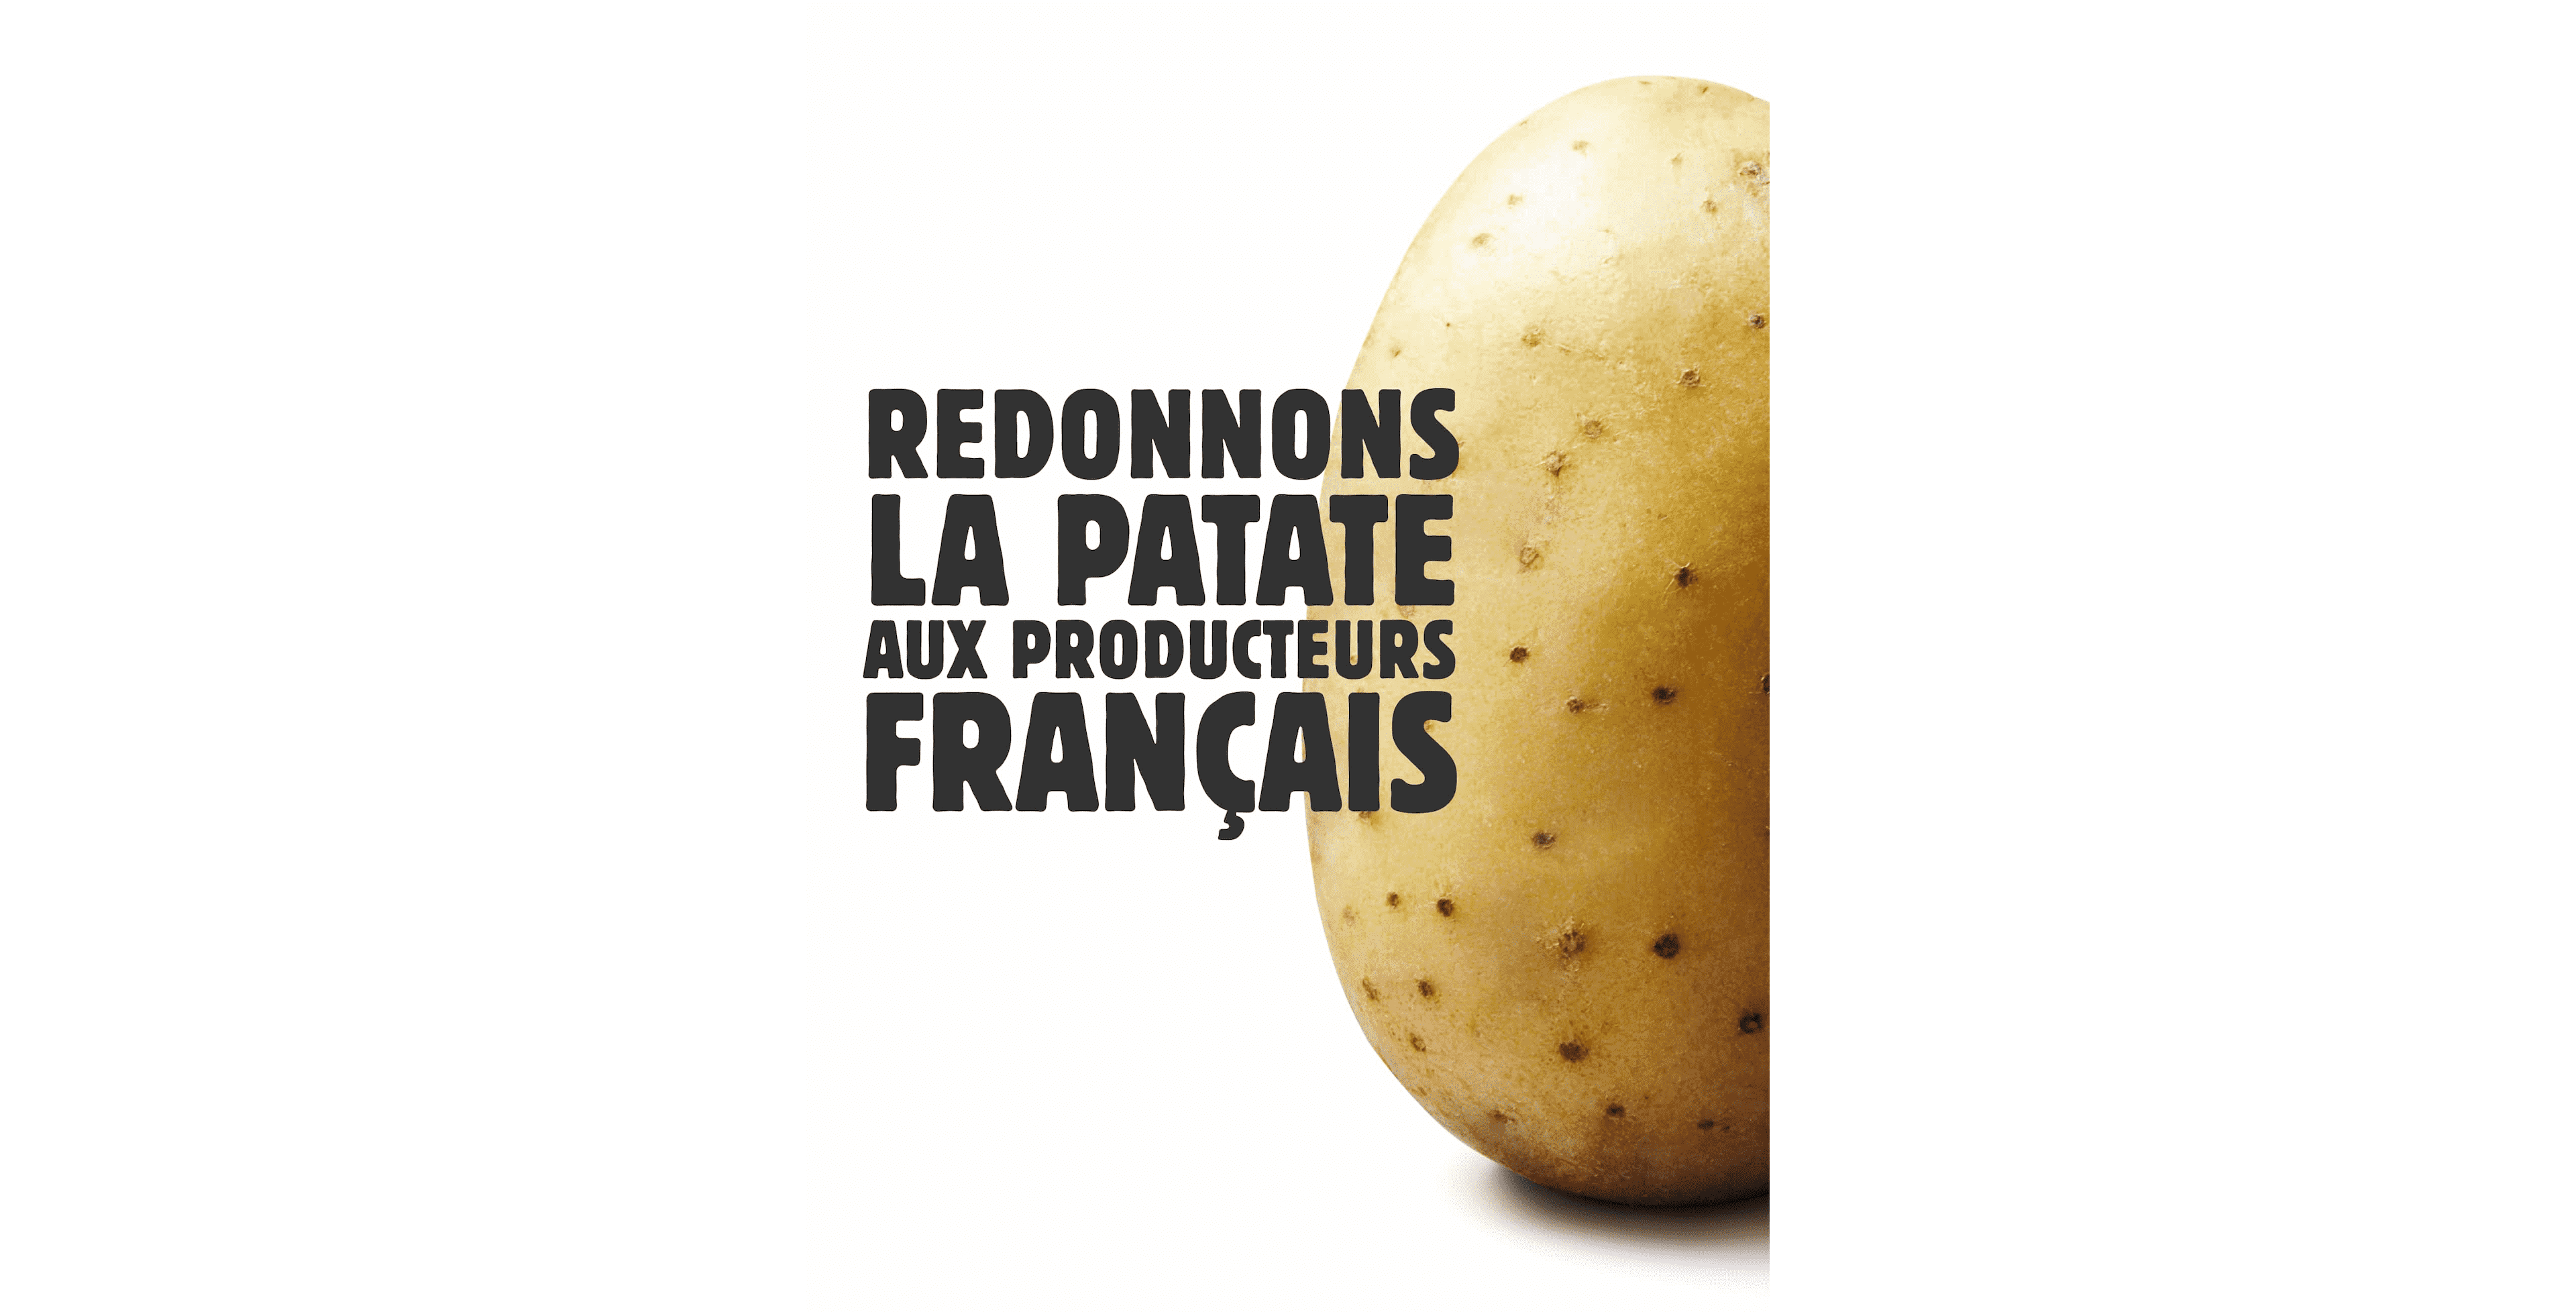 Redonnons la patate aux producteurs français